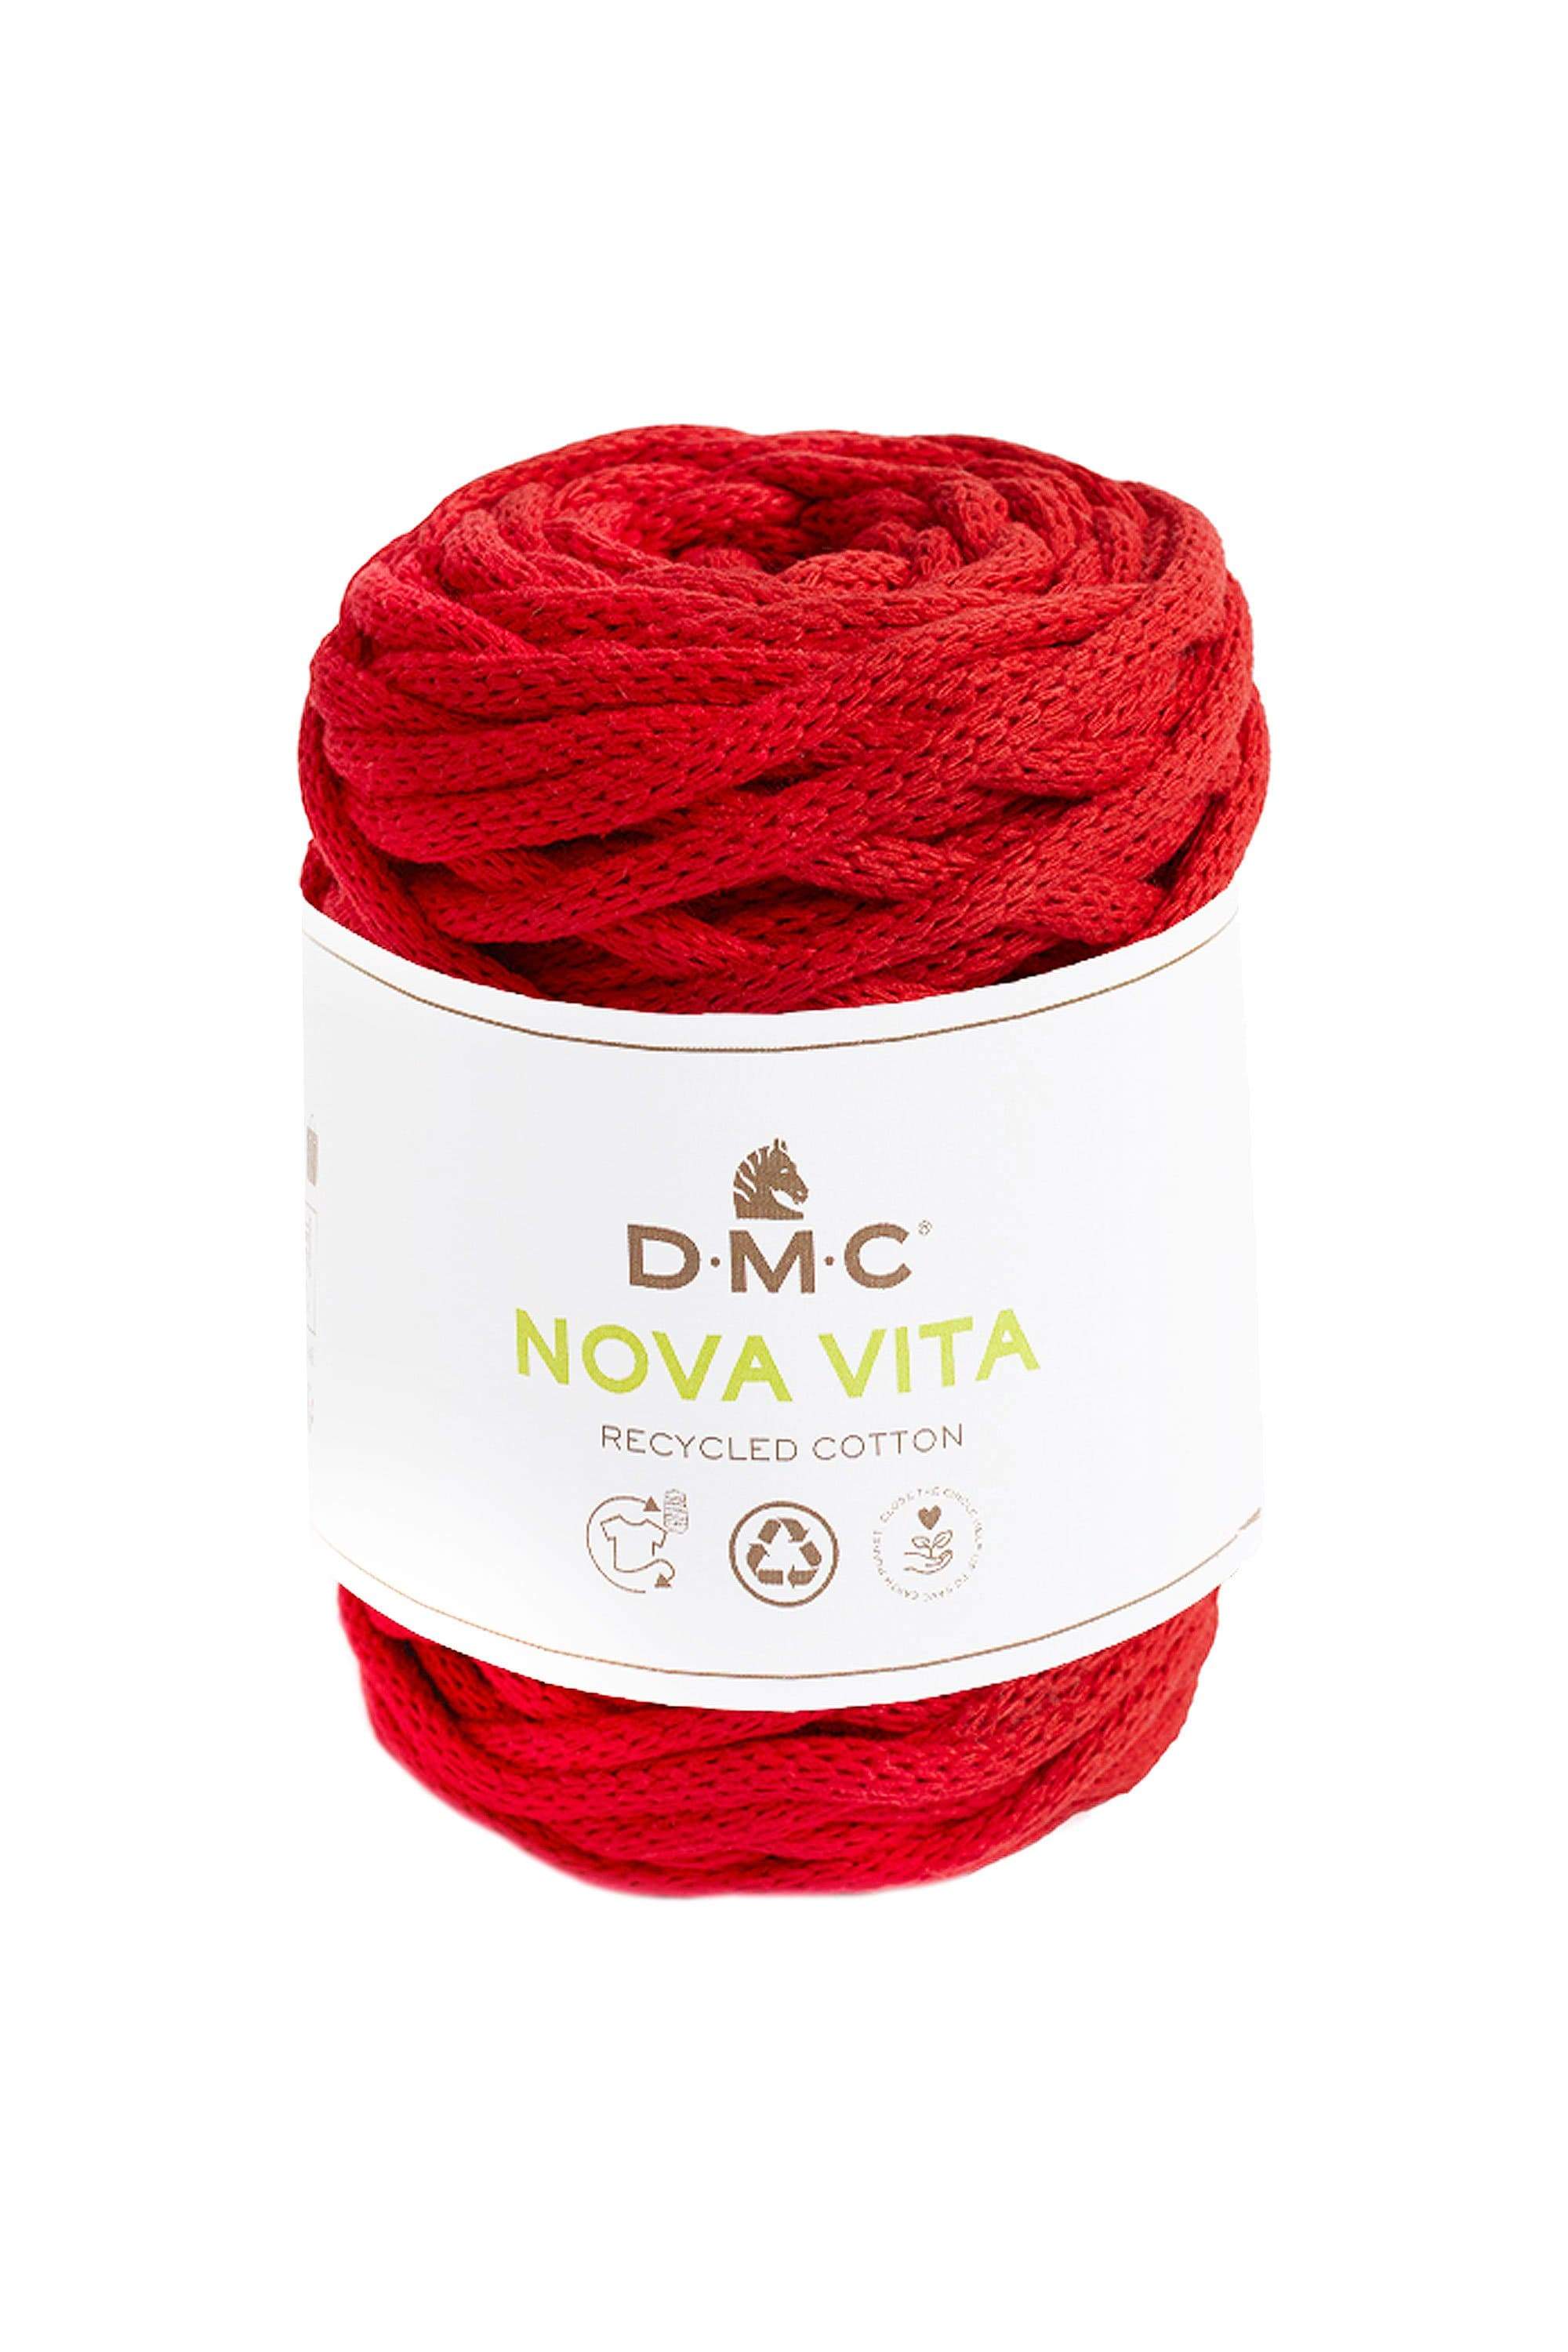 DMC Yarn 05 DMC Nova Vita